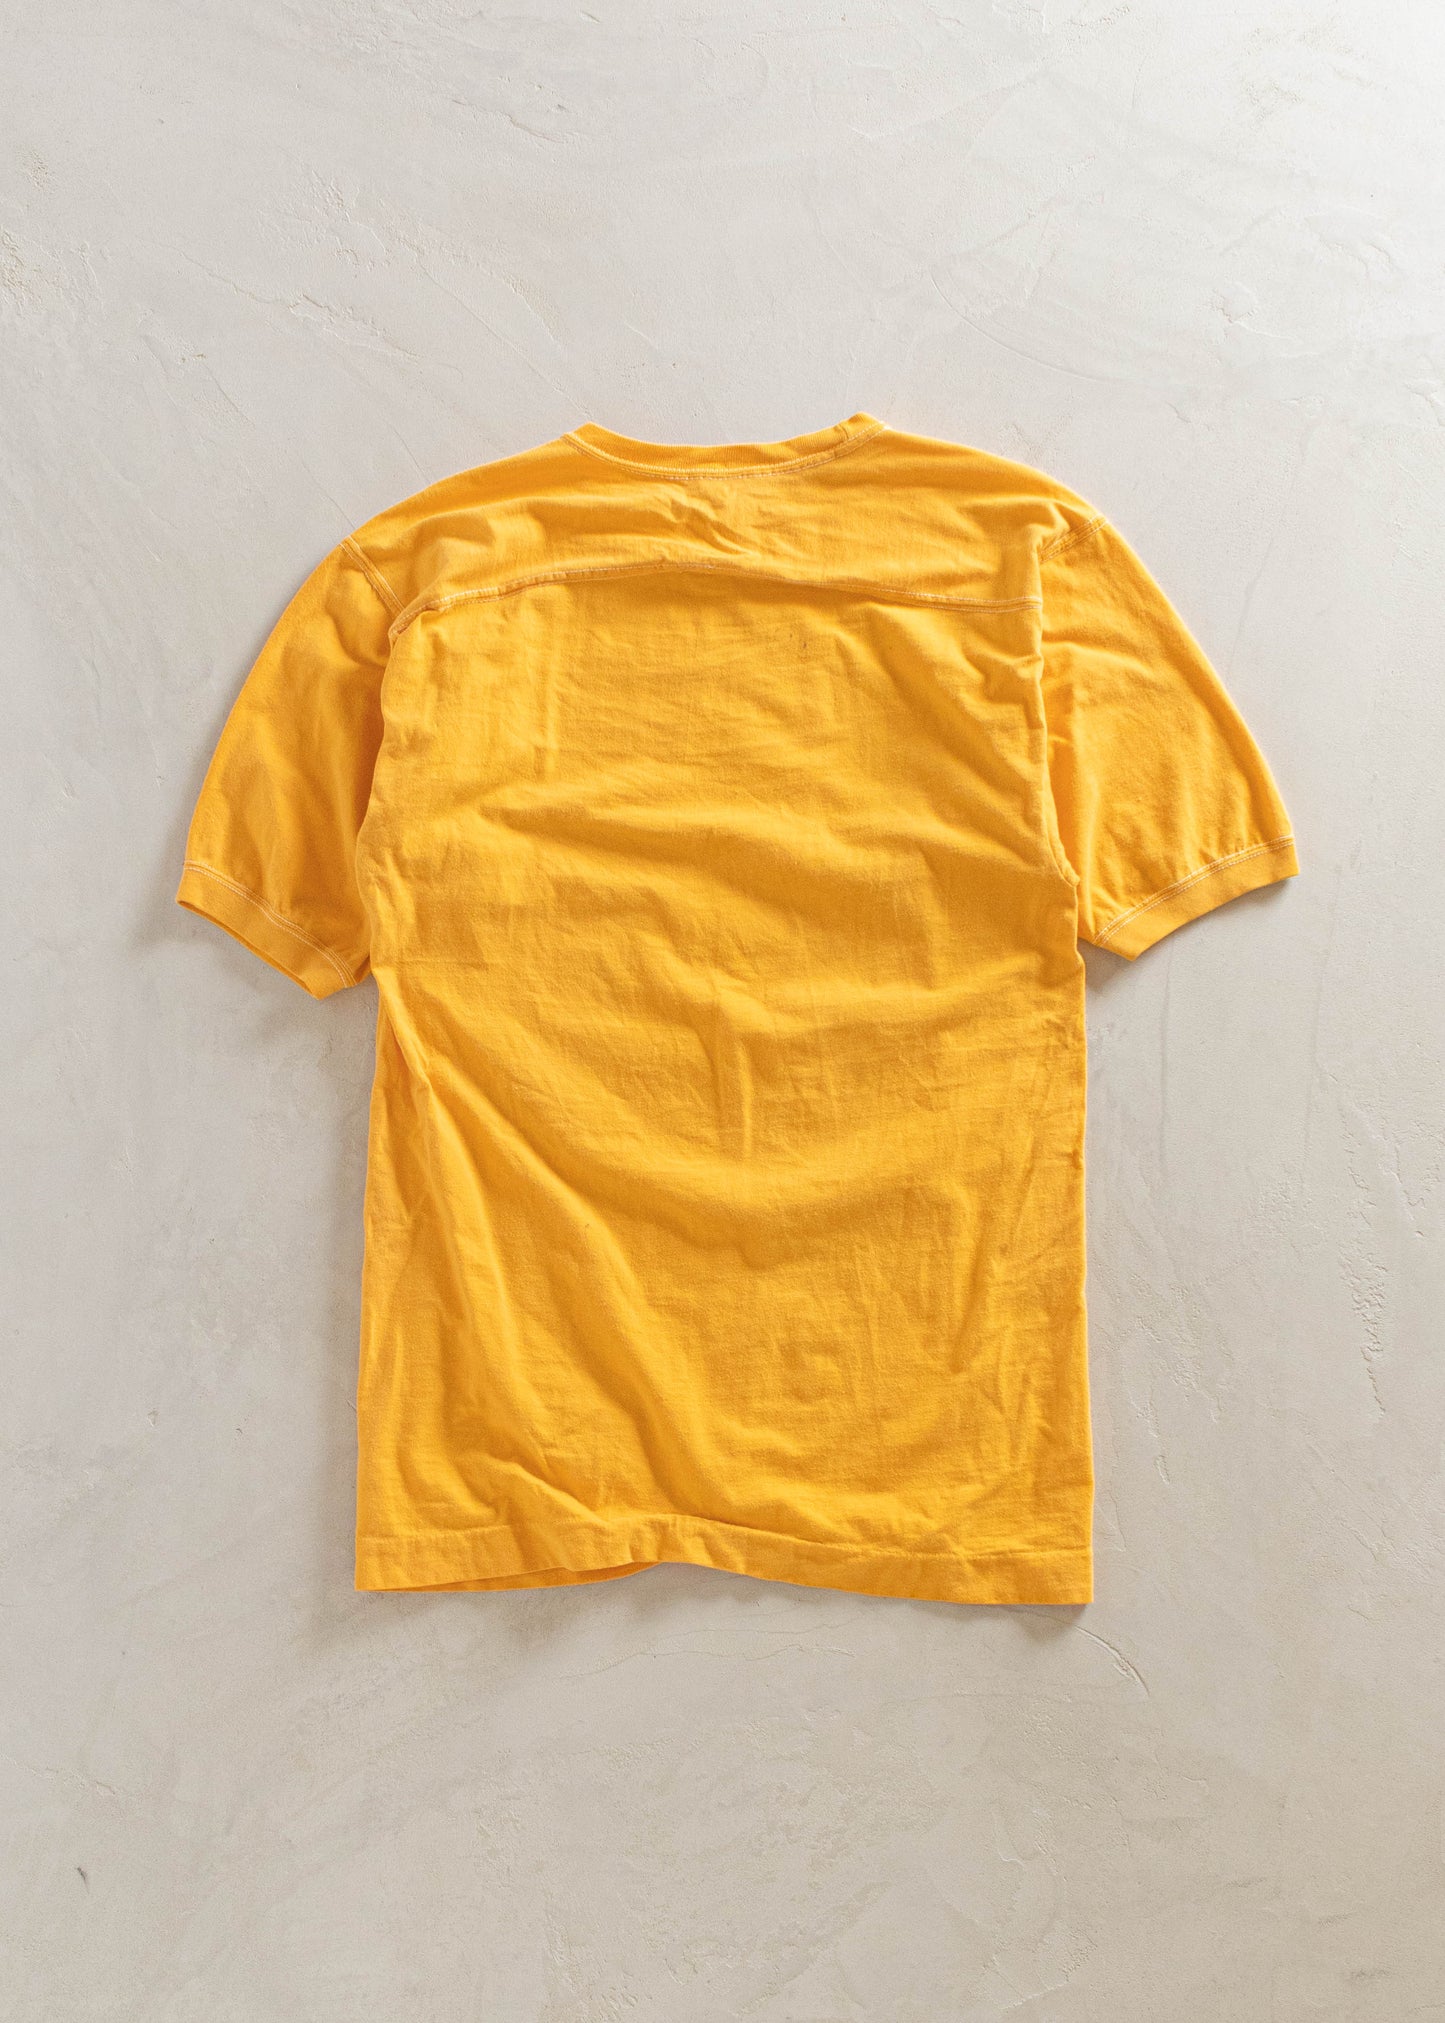 1980s Sportswear Trojan Swimming Sport T-Shirt Size S/M